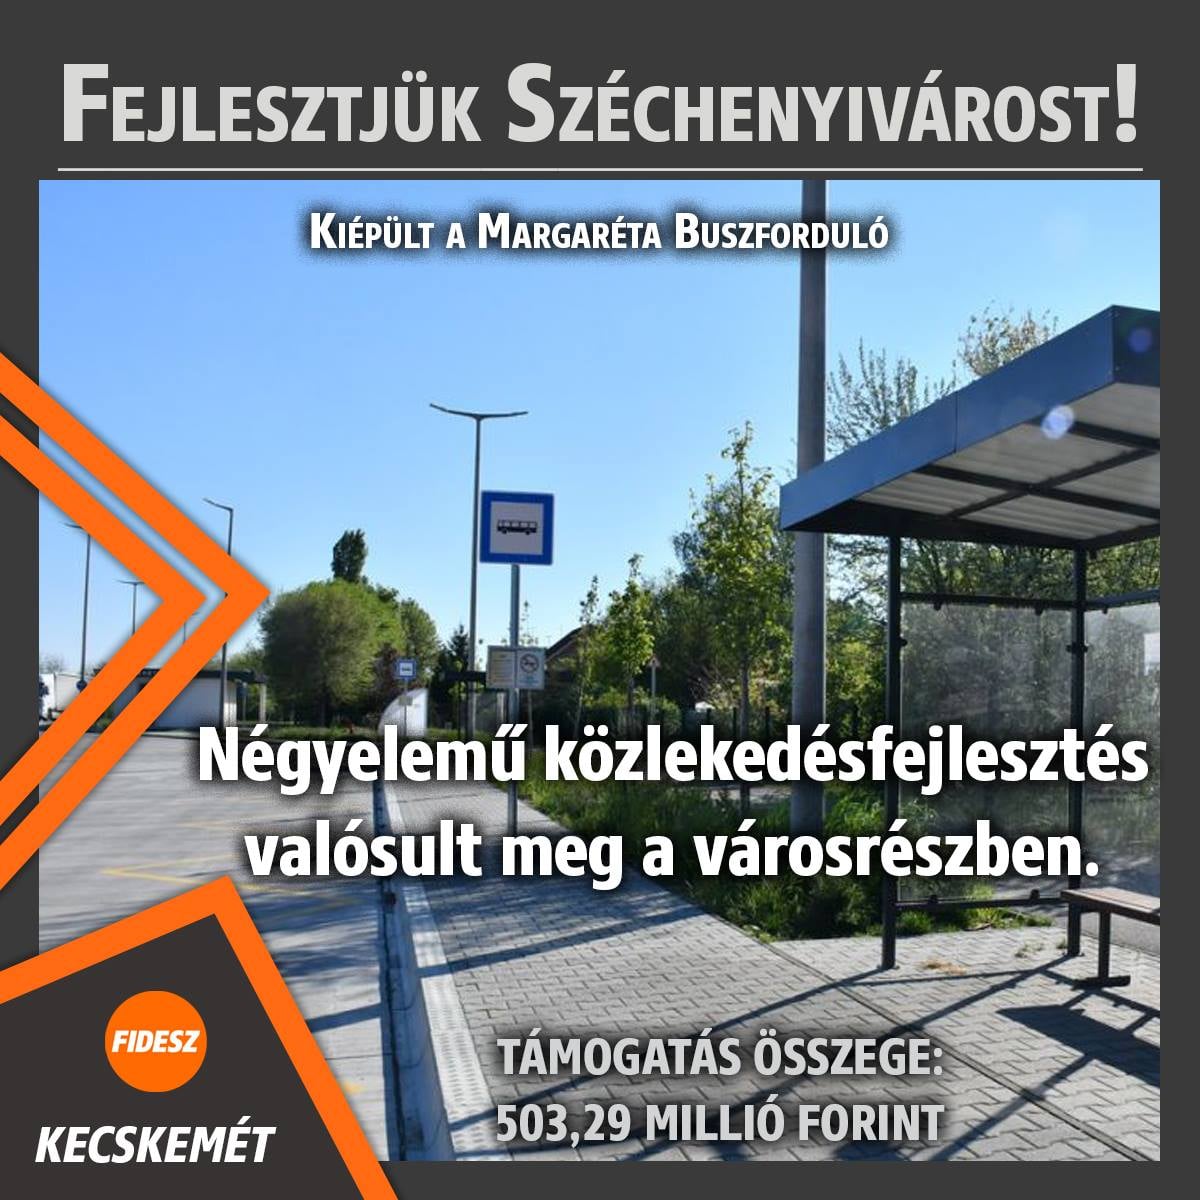 Fejlesztjük Széchenyivárost! Kiépült a Margaréta buszforduló